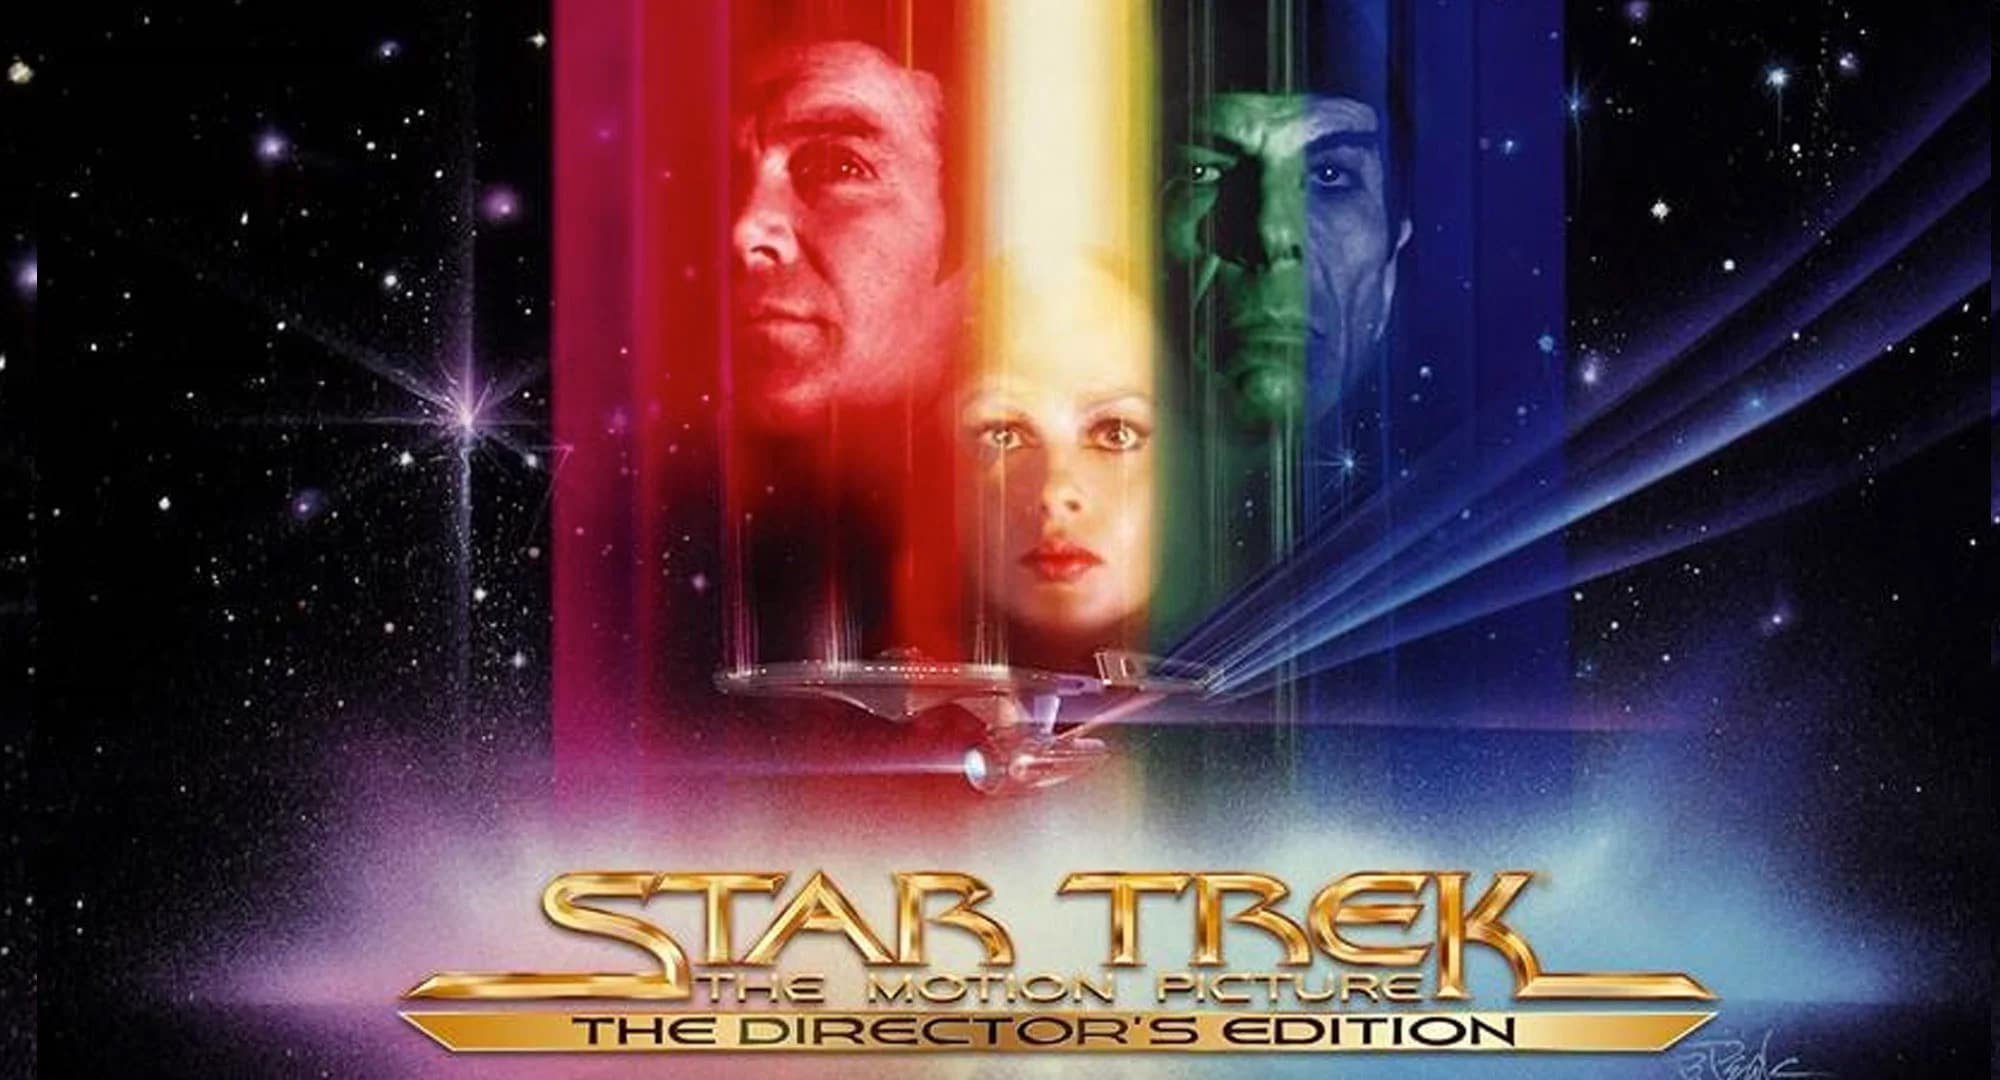 Jetzt vorbestellbar Star Trek 4MovieCollection auf 4K UHD Bluray